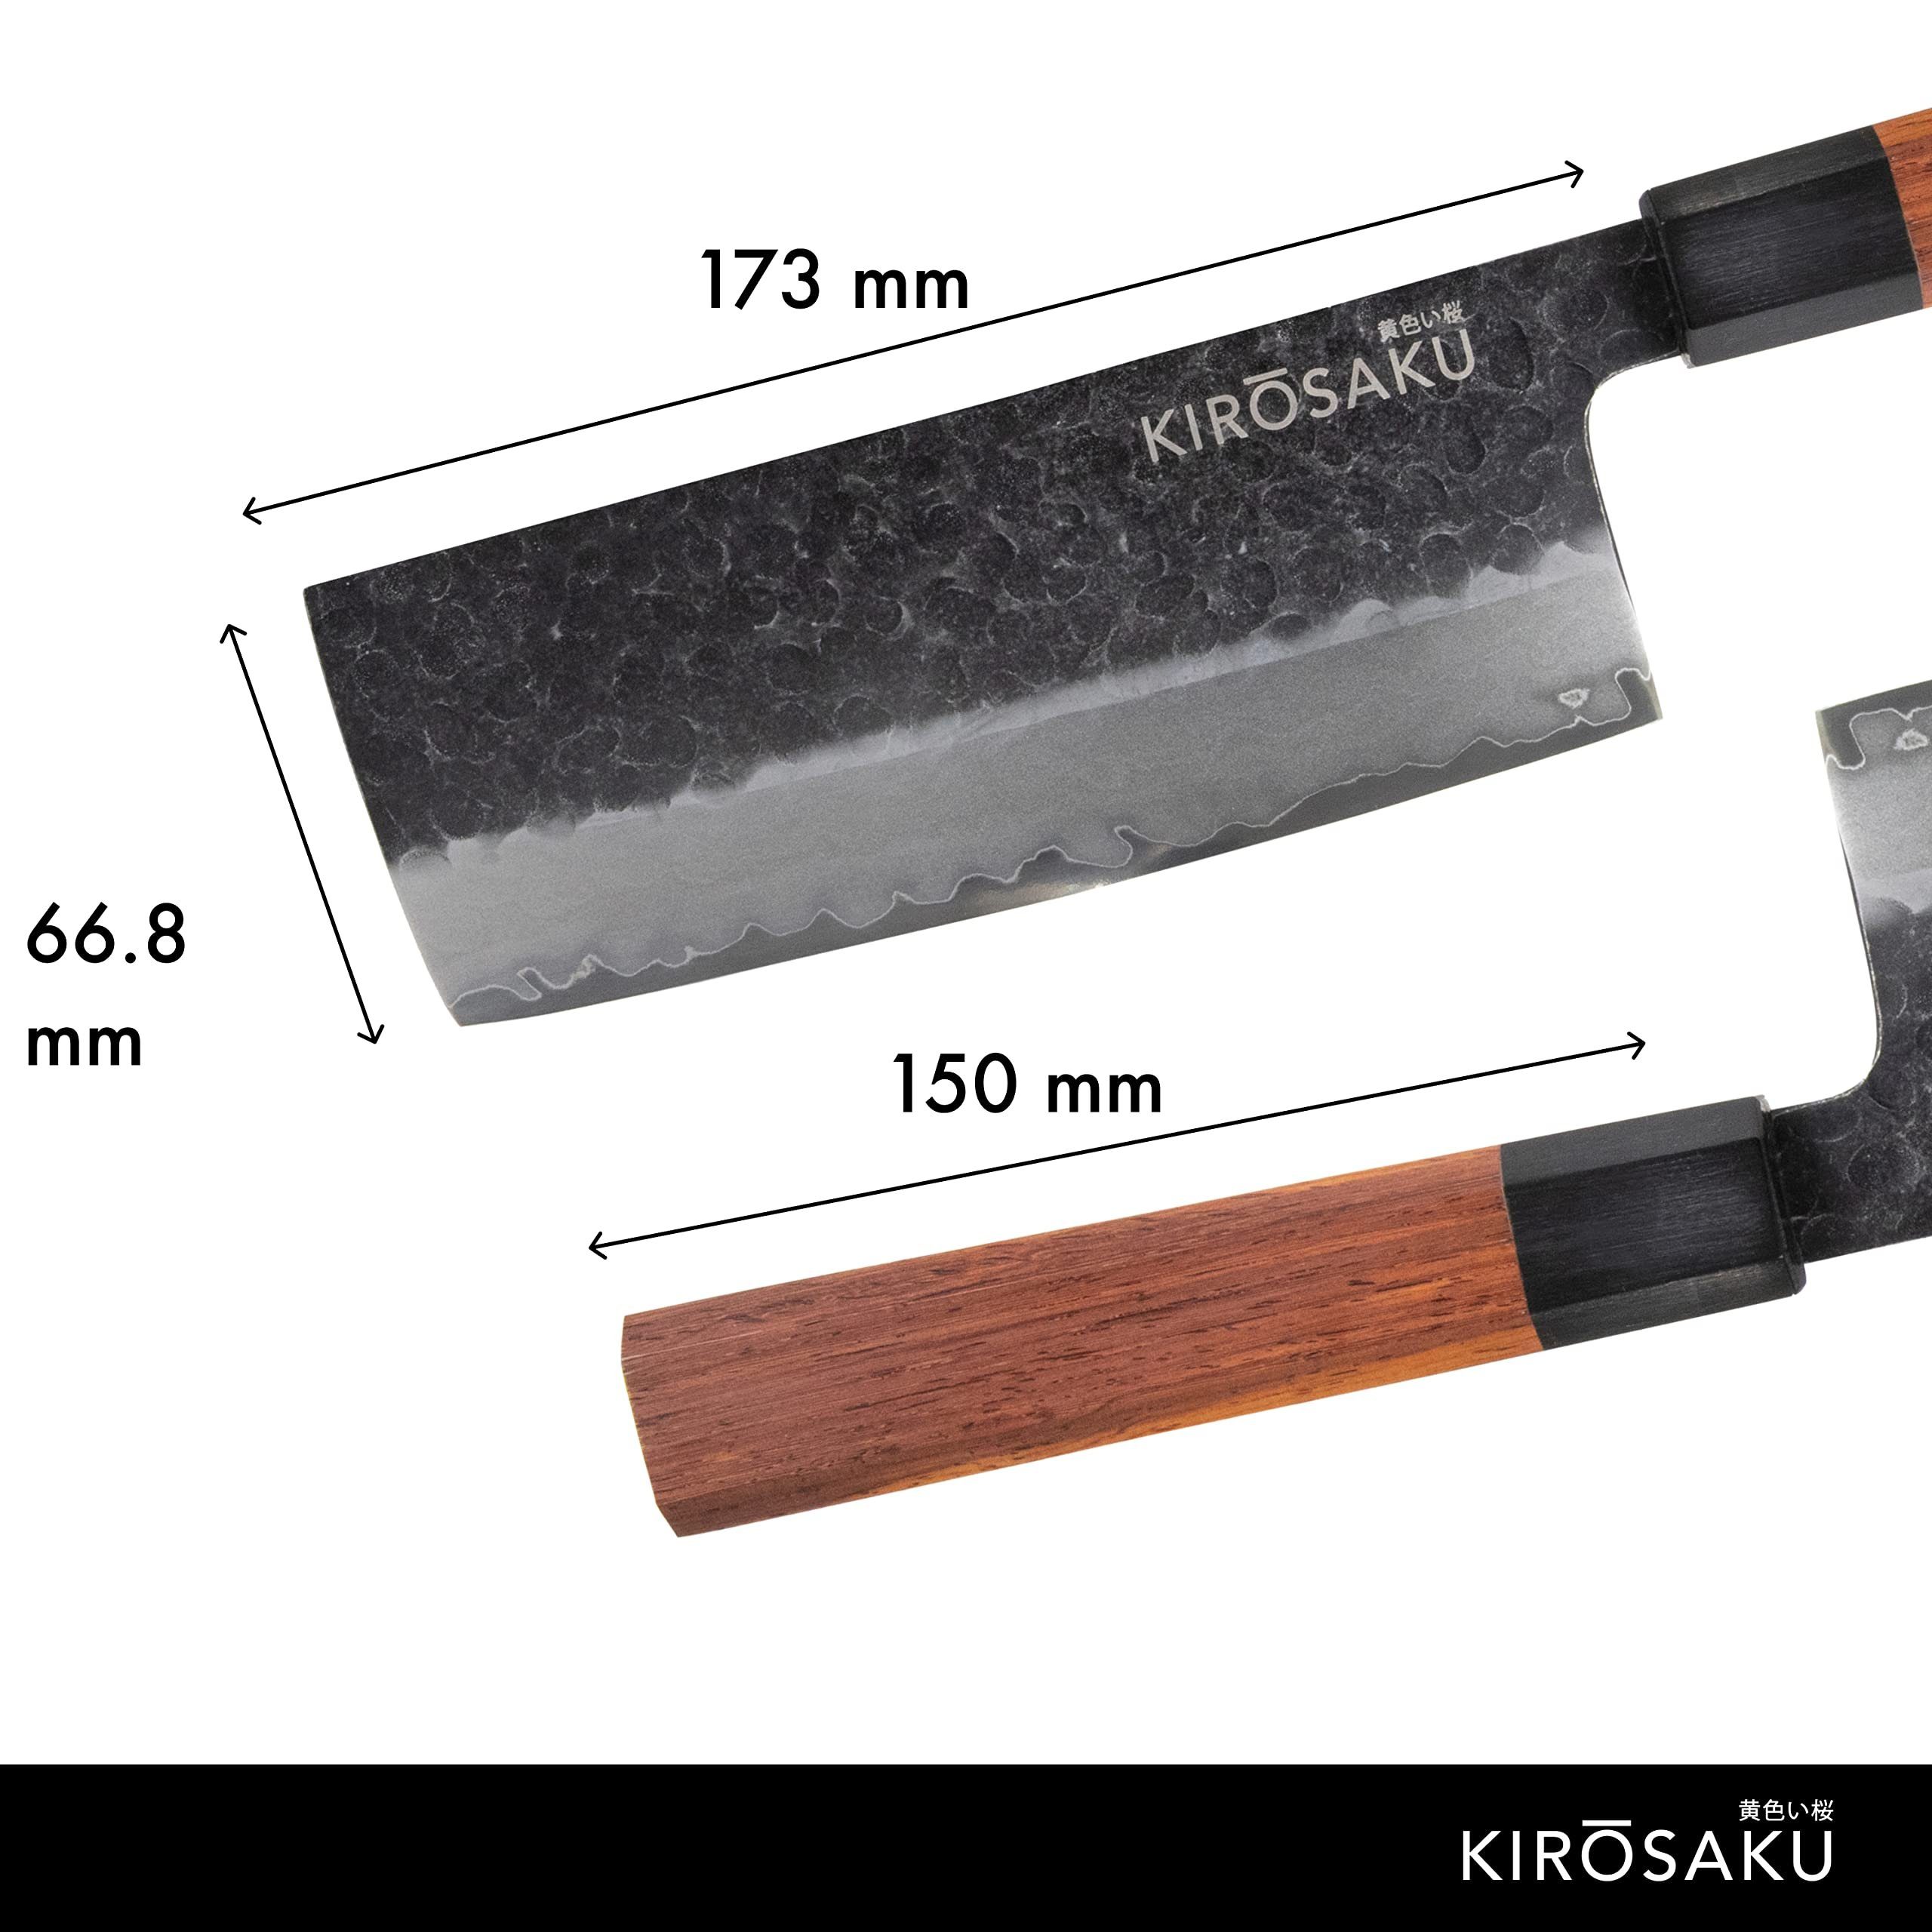 & Japanisches Holzgriff, Messerset Kirosaku Cm 17 - 32cm Hellbraun Asiamesser Stahl Ii. 3-lagiger